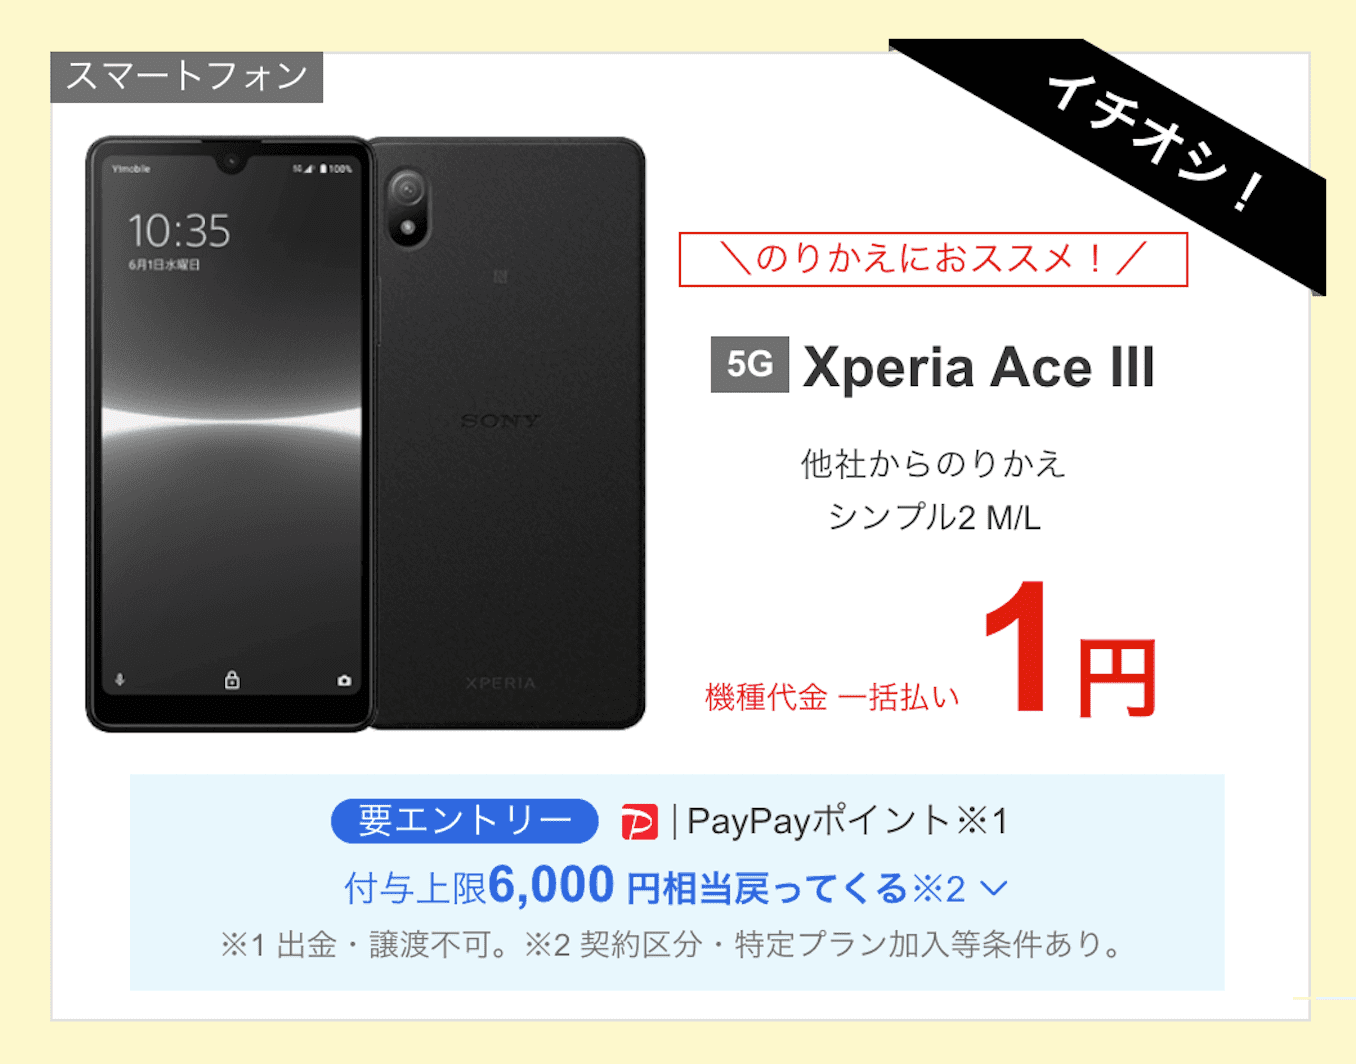 ワイモバイルのXperia Ace IIIのキャンペーン価格